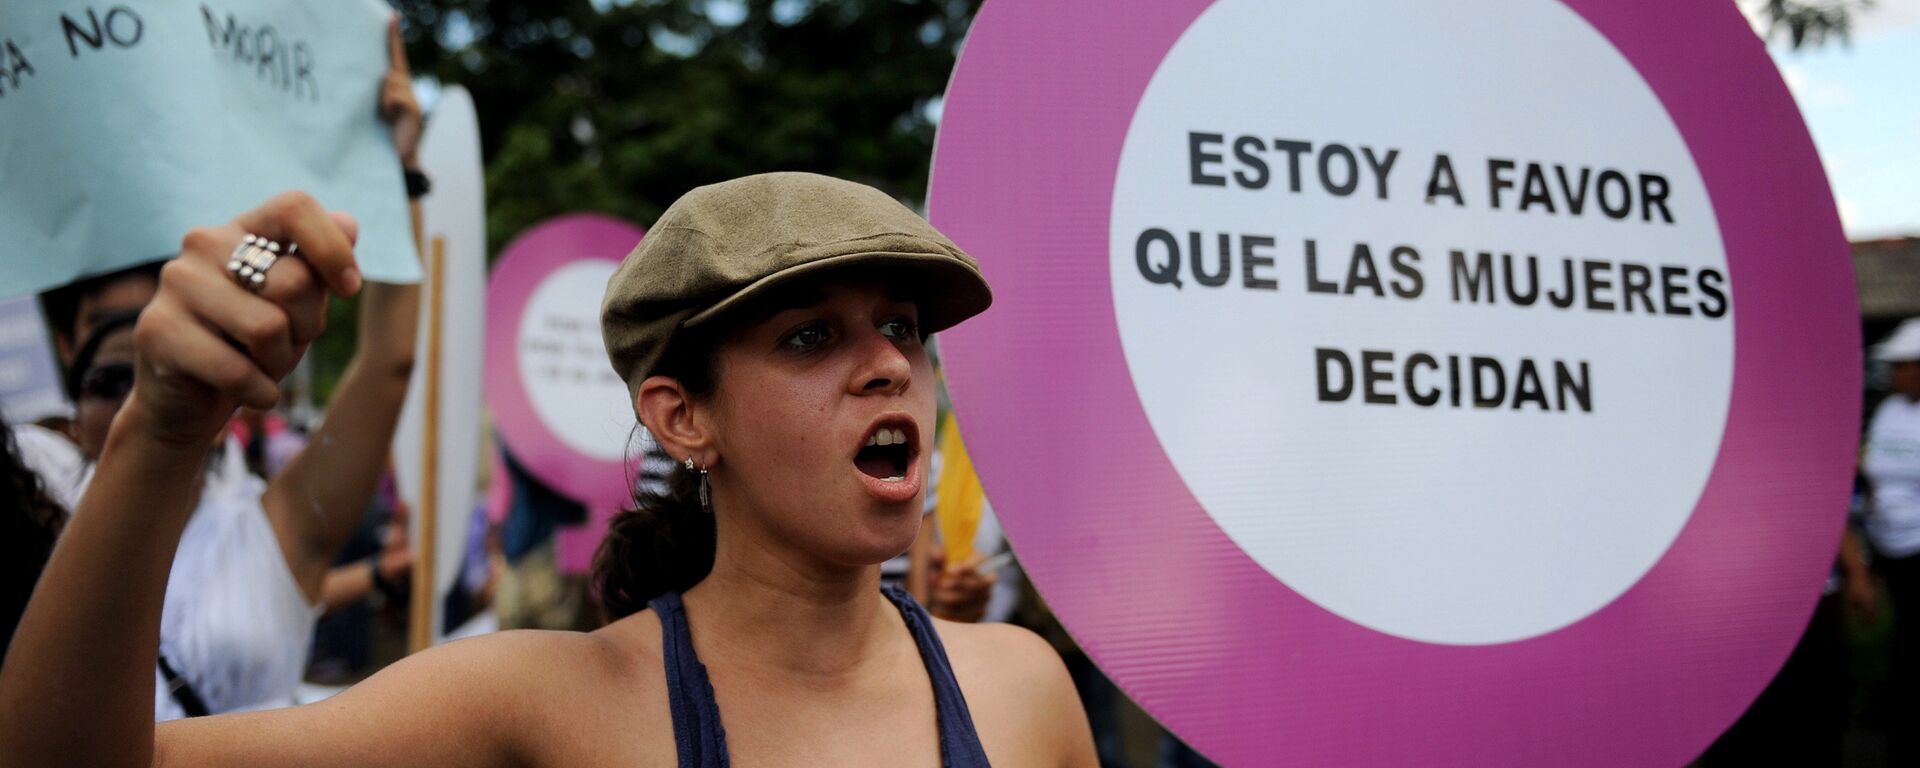 Activistas de Nicaragua participan en la protesta a favor del aborto, Managua - Sputnik Mundo, 1920, 27.10.2016